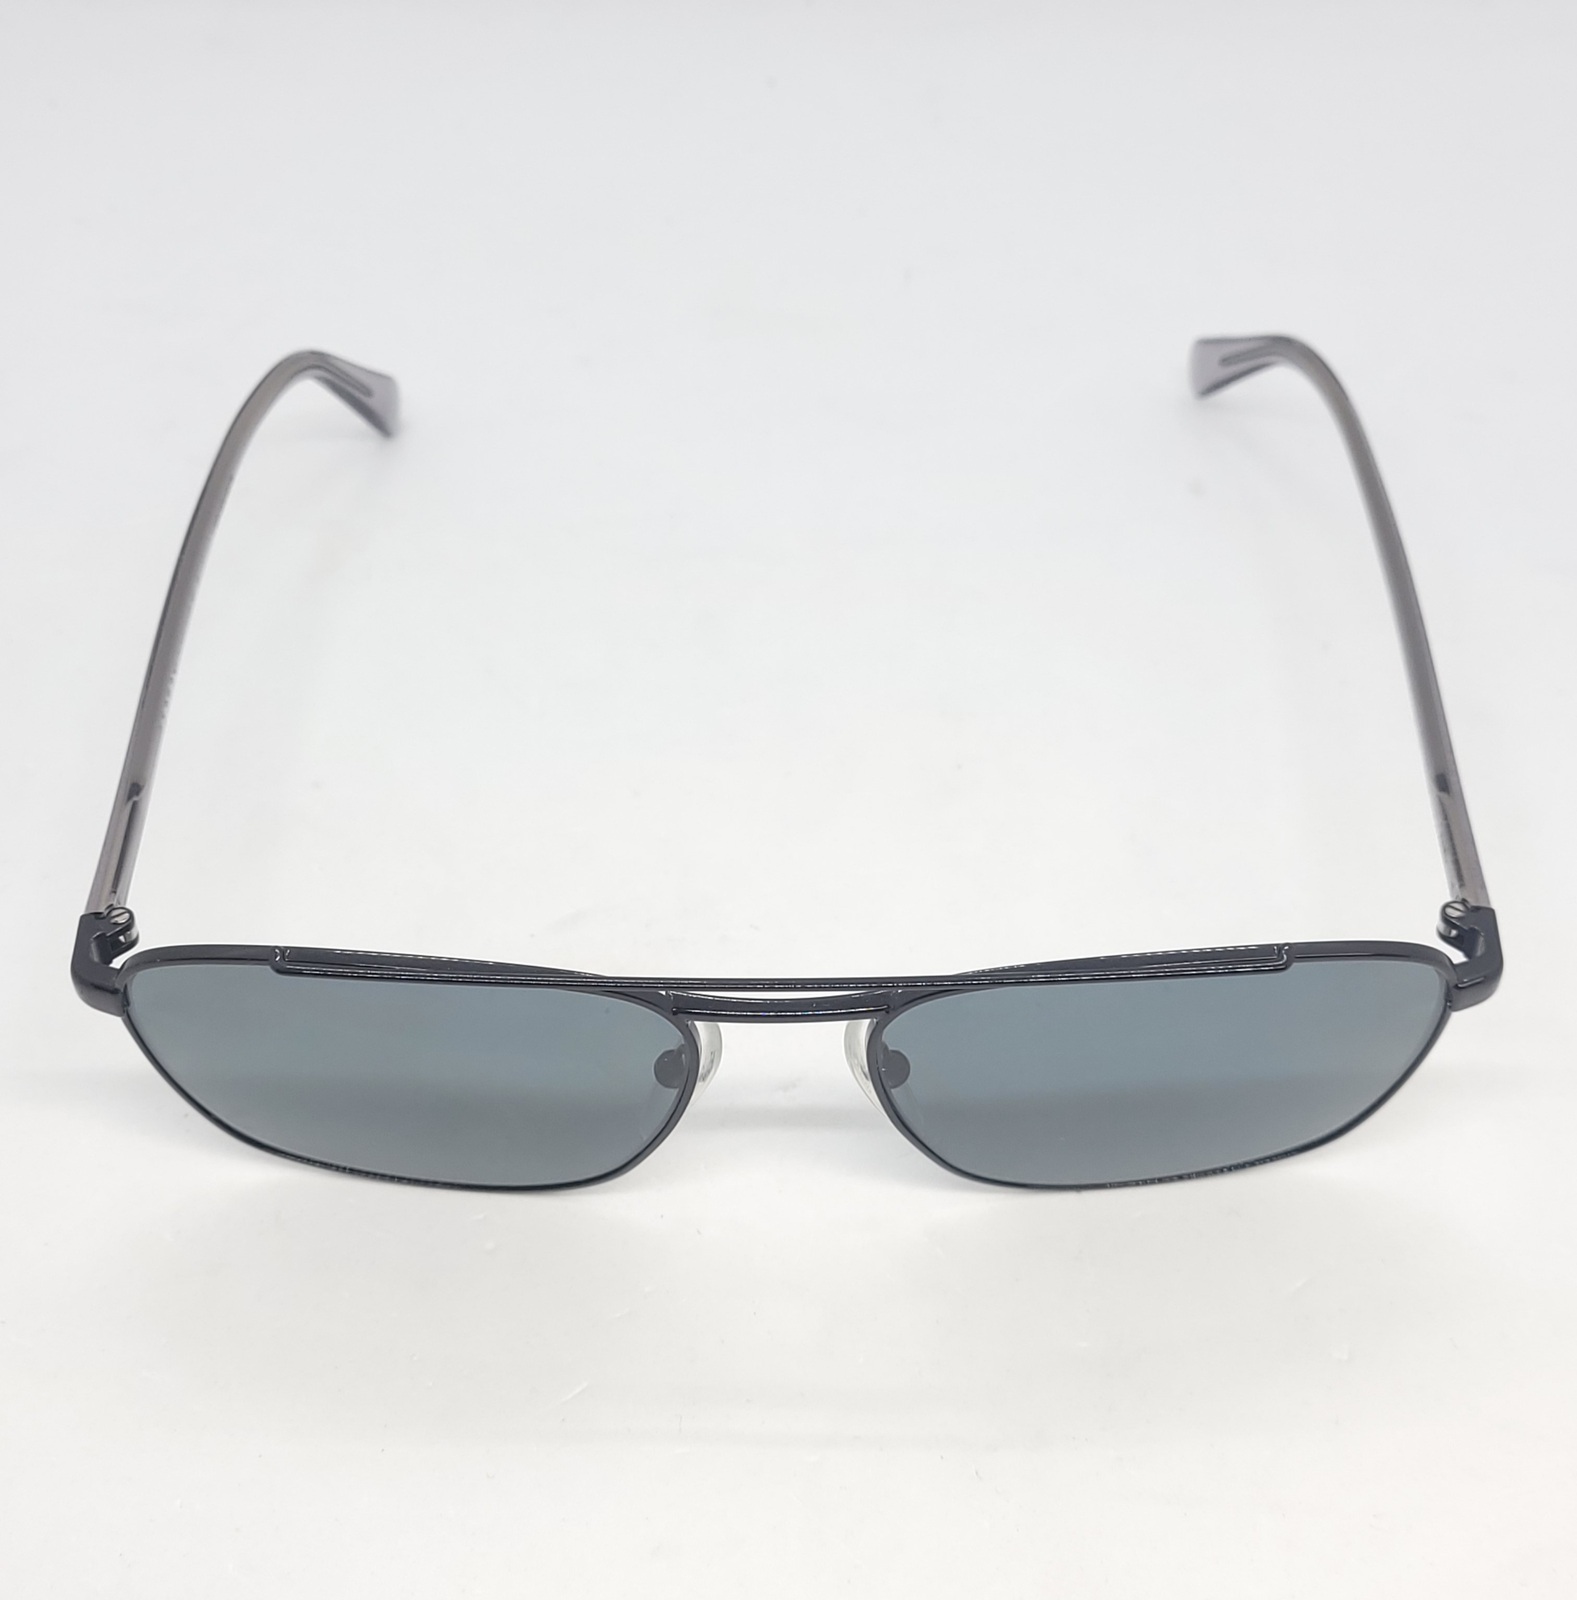 Prada Men's Sunglasses SPR 61U Polarised (Pre-Owned)